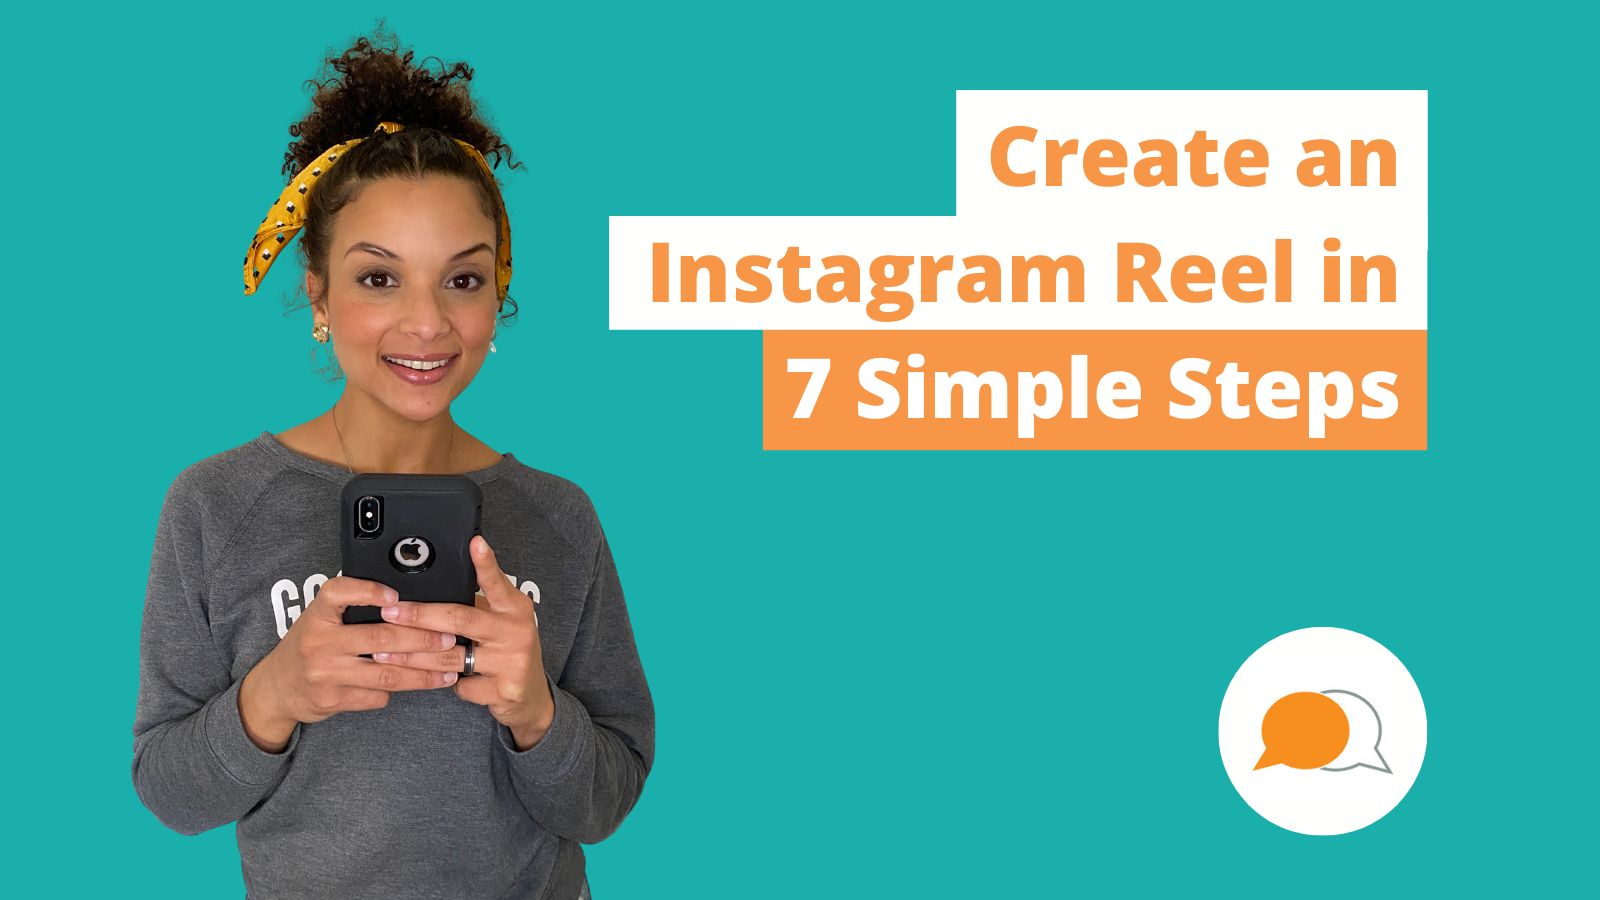 Create an Instagram Reel in 7 Simple Steps